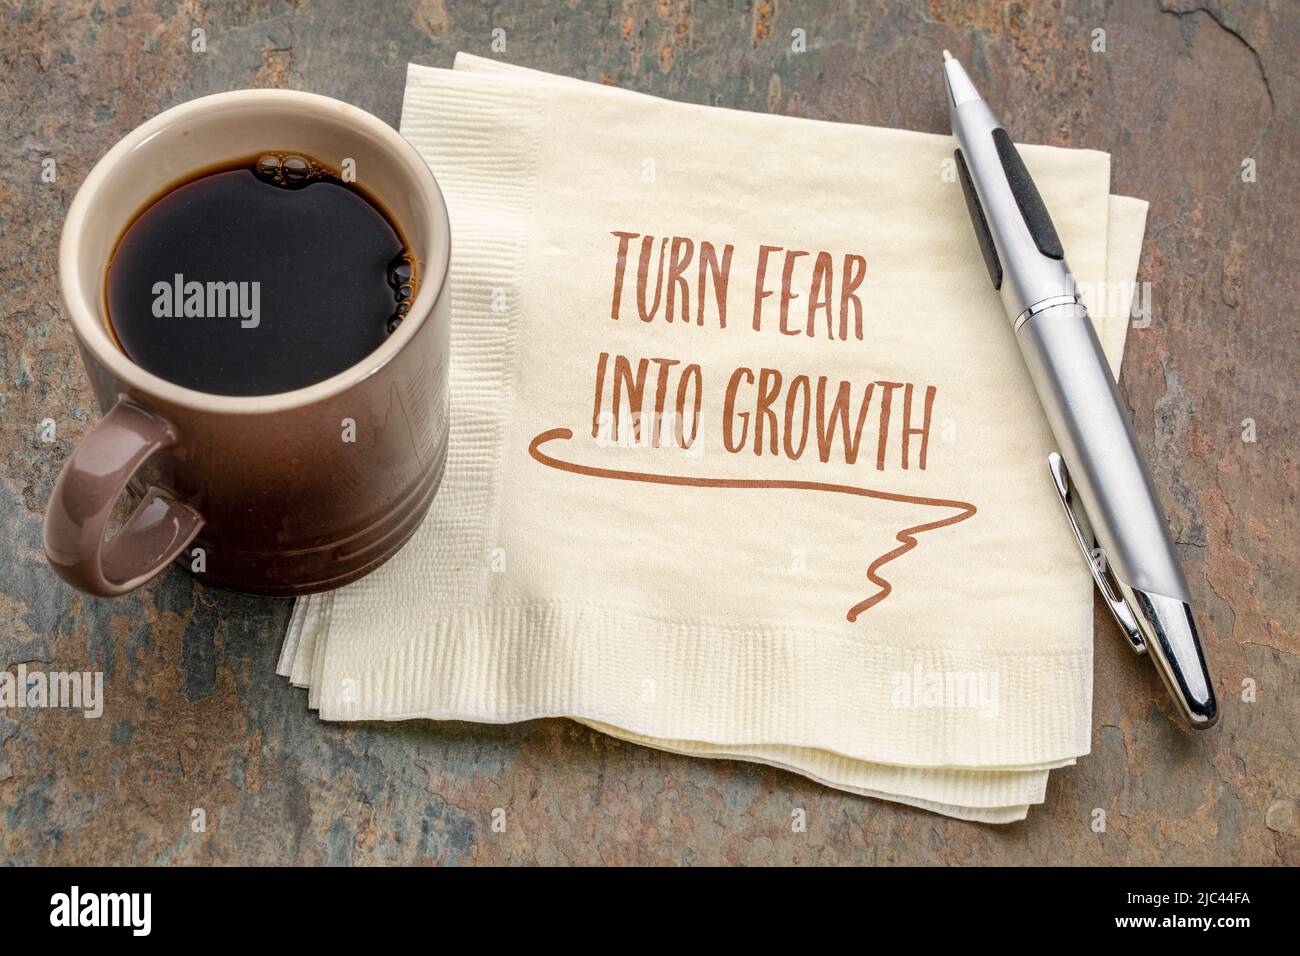 Verwandeln Sie Angst in eine wachstumsinspirierende Note - Handschrift auf einer Serviette mit einer Tasse Kaffee, persönliches Entwicklungskonzept Stockfoto